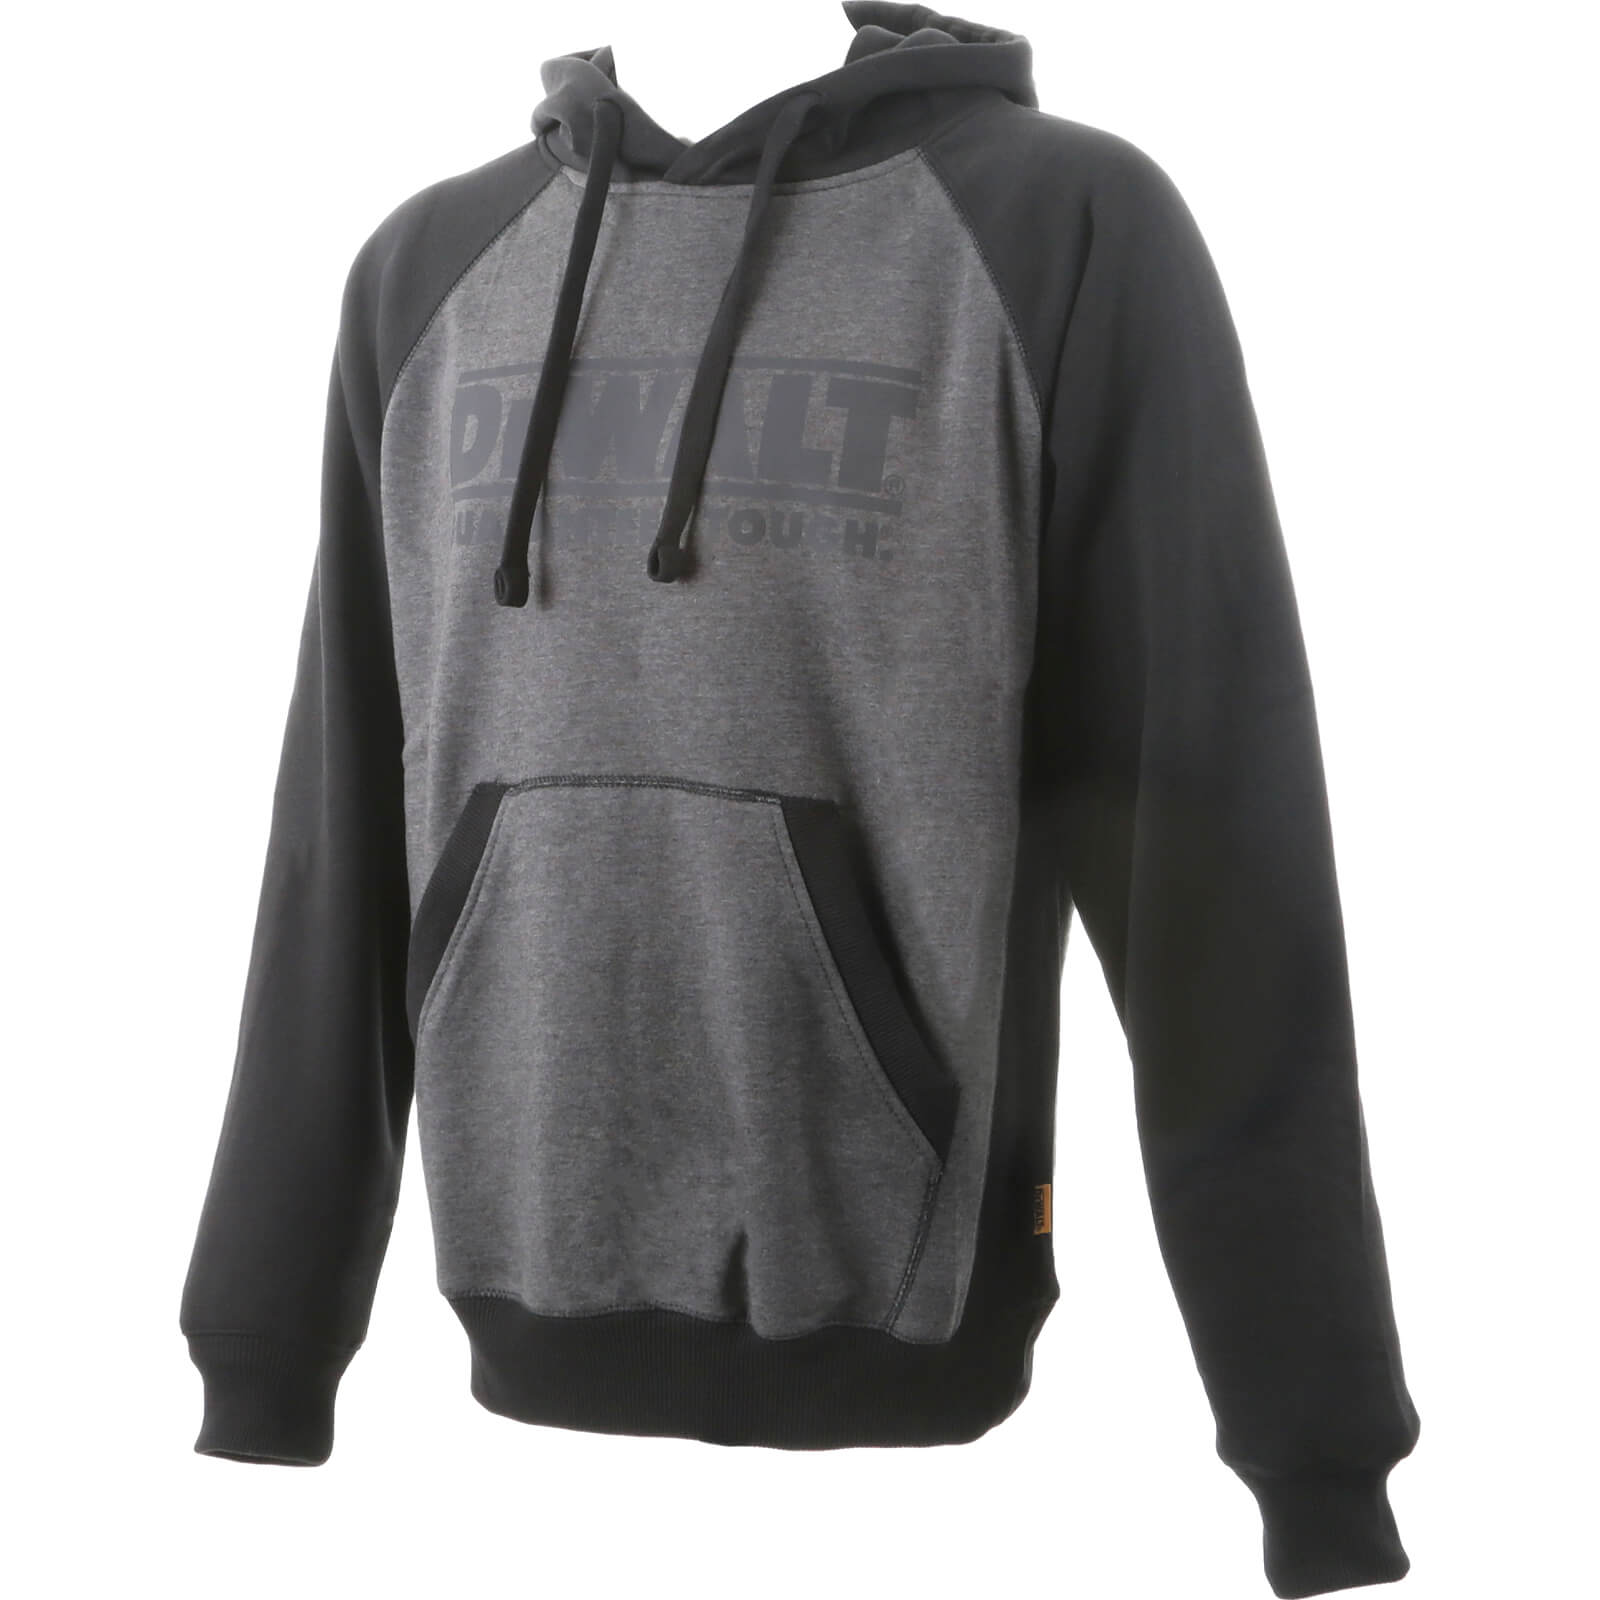 Image of DeWalt Stratford Hoodie Sweatshirt Black / Grey 2XL